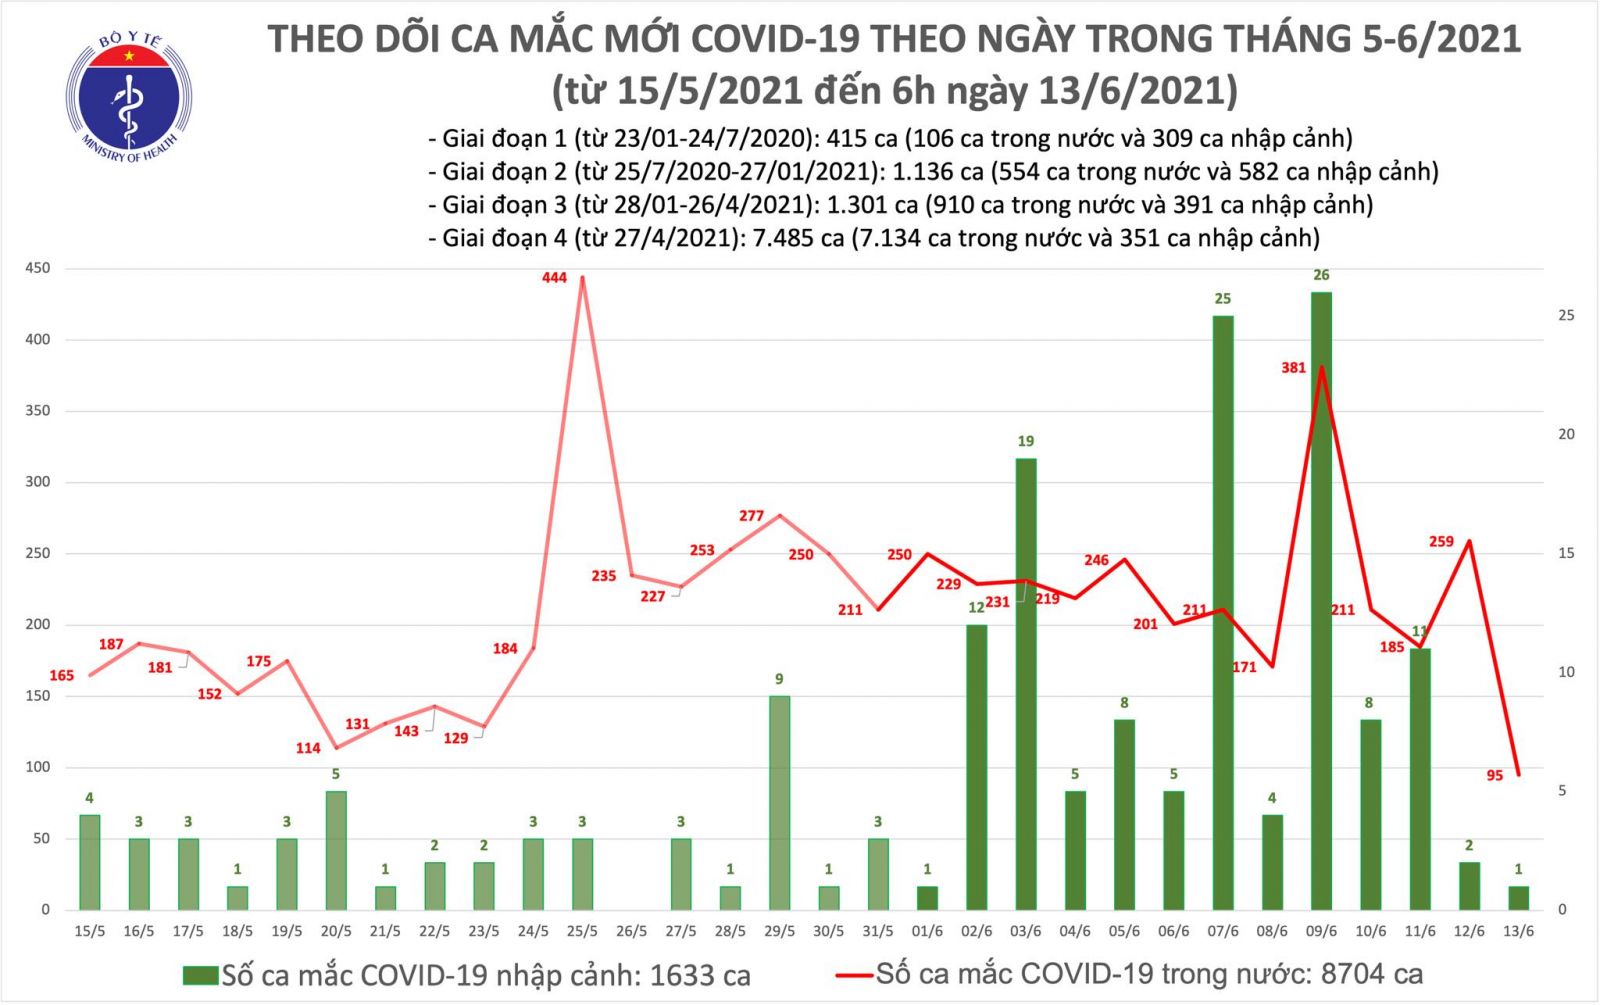 Sáng 13/6: Thêm 96 ca mắc COVID-19, Bắc Ninh chiếm nhiều nhất với 34 trường hợp